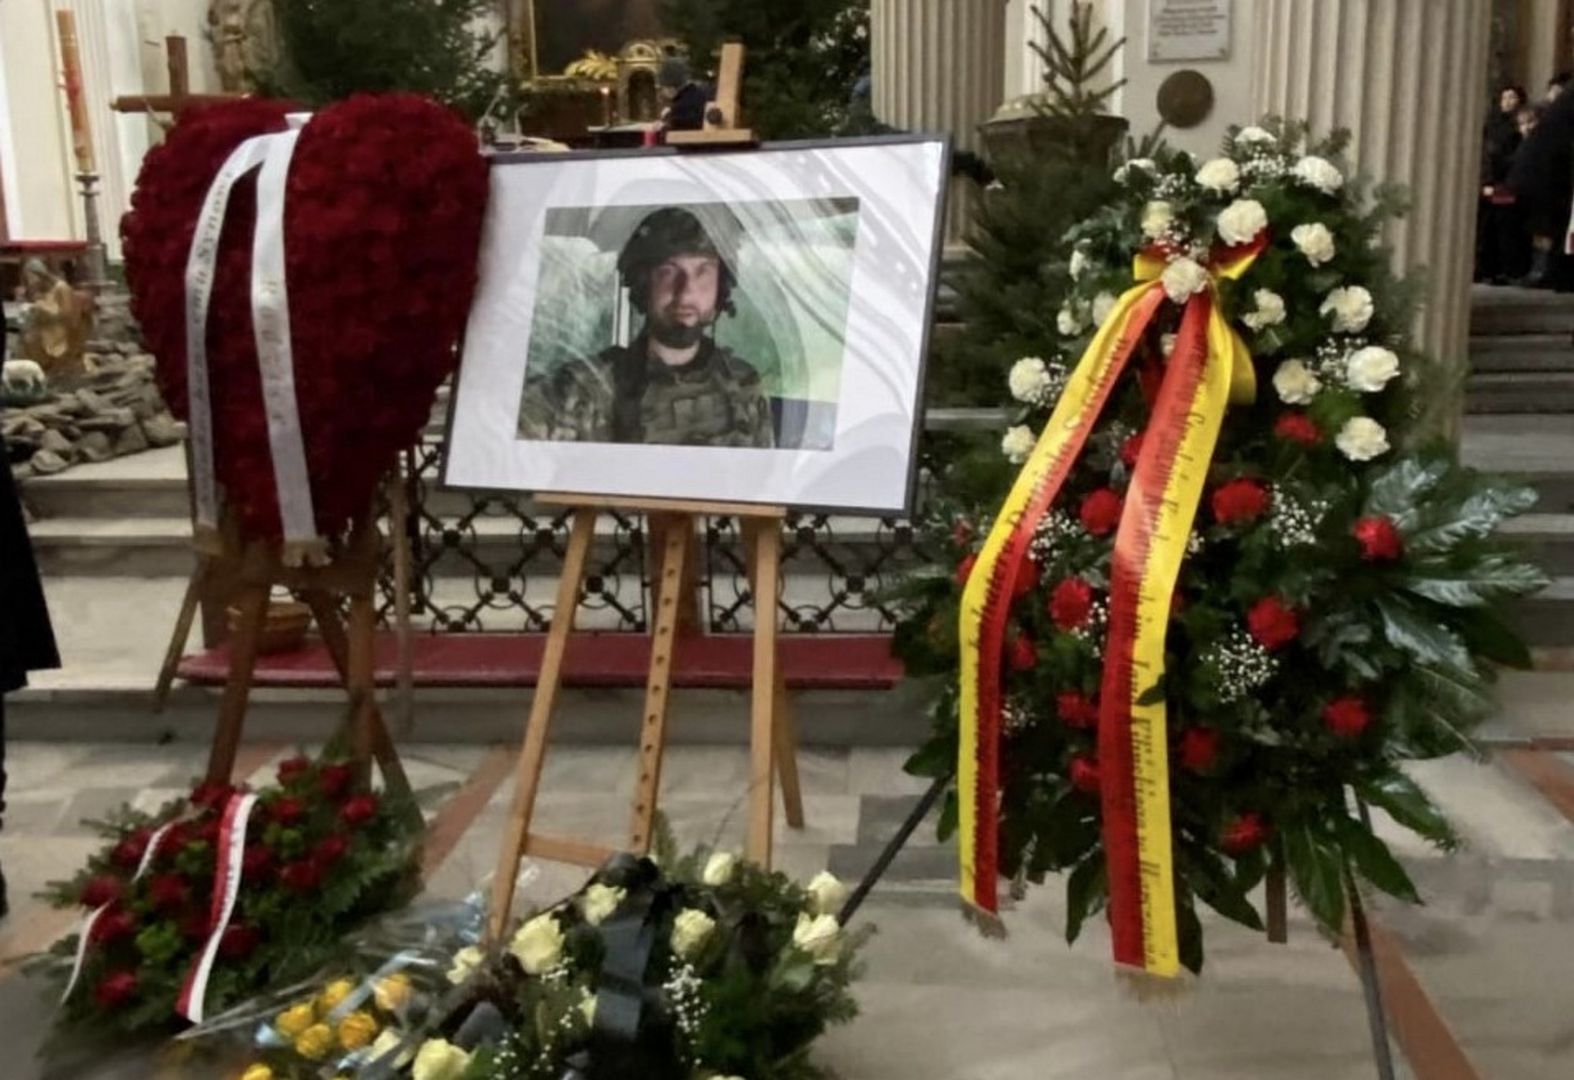 Warszawiacy pożegnali polskiego bohatera. Zginął w walkach o wolną Ukrainę